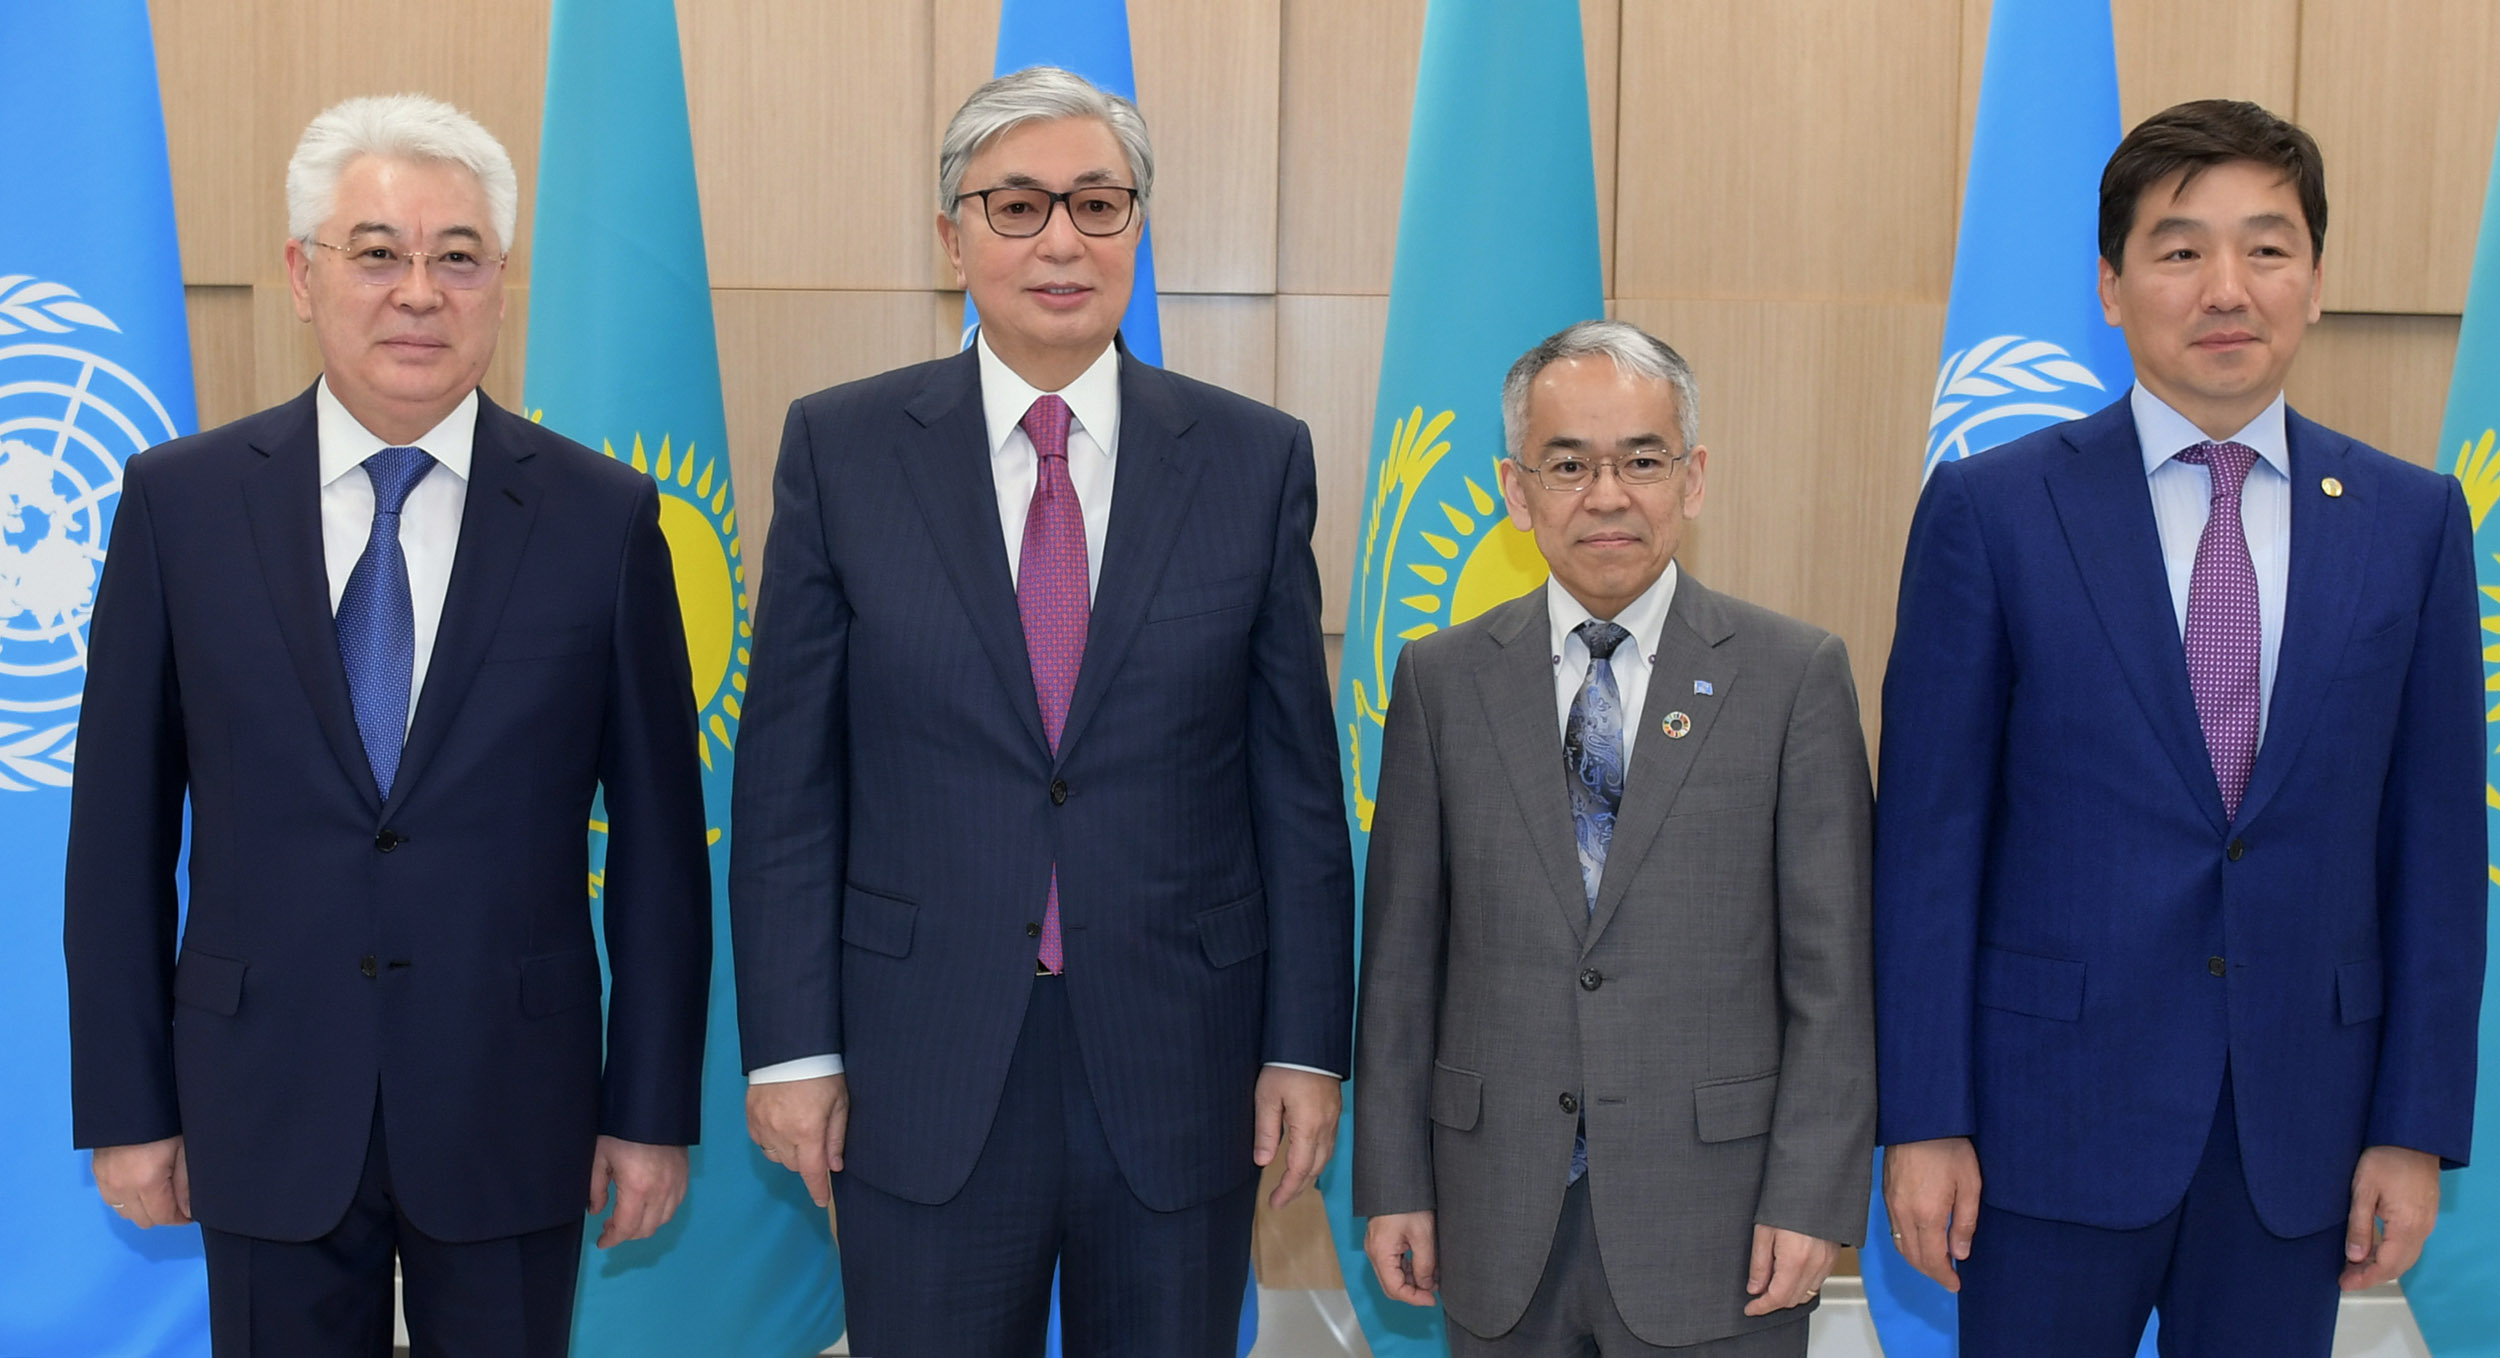 Касым-Жомарт Токаев посетил новый офис ООН в Алматы